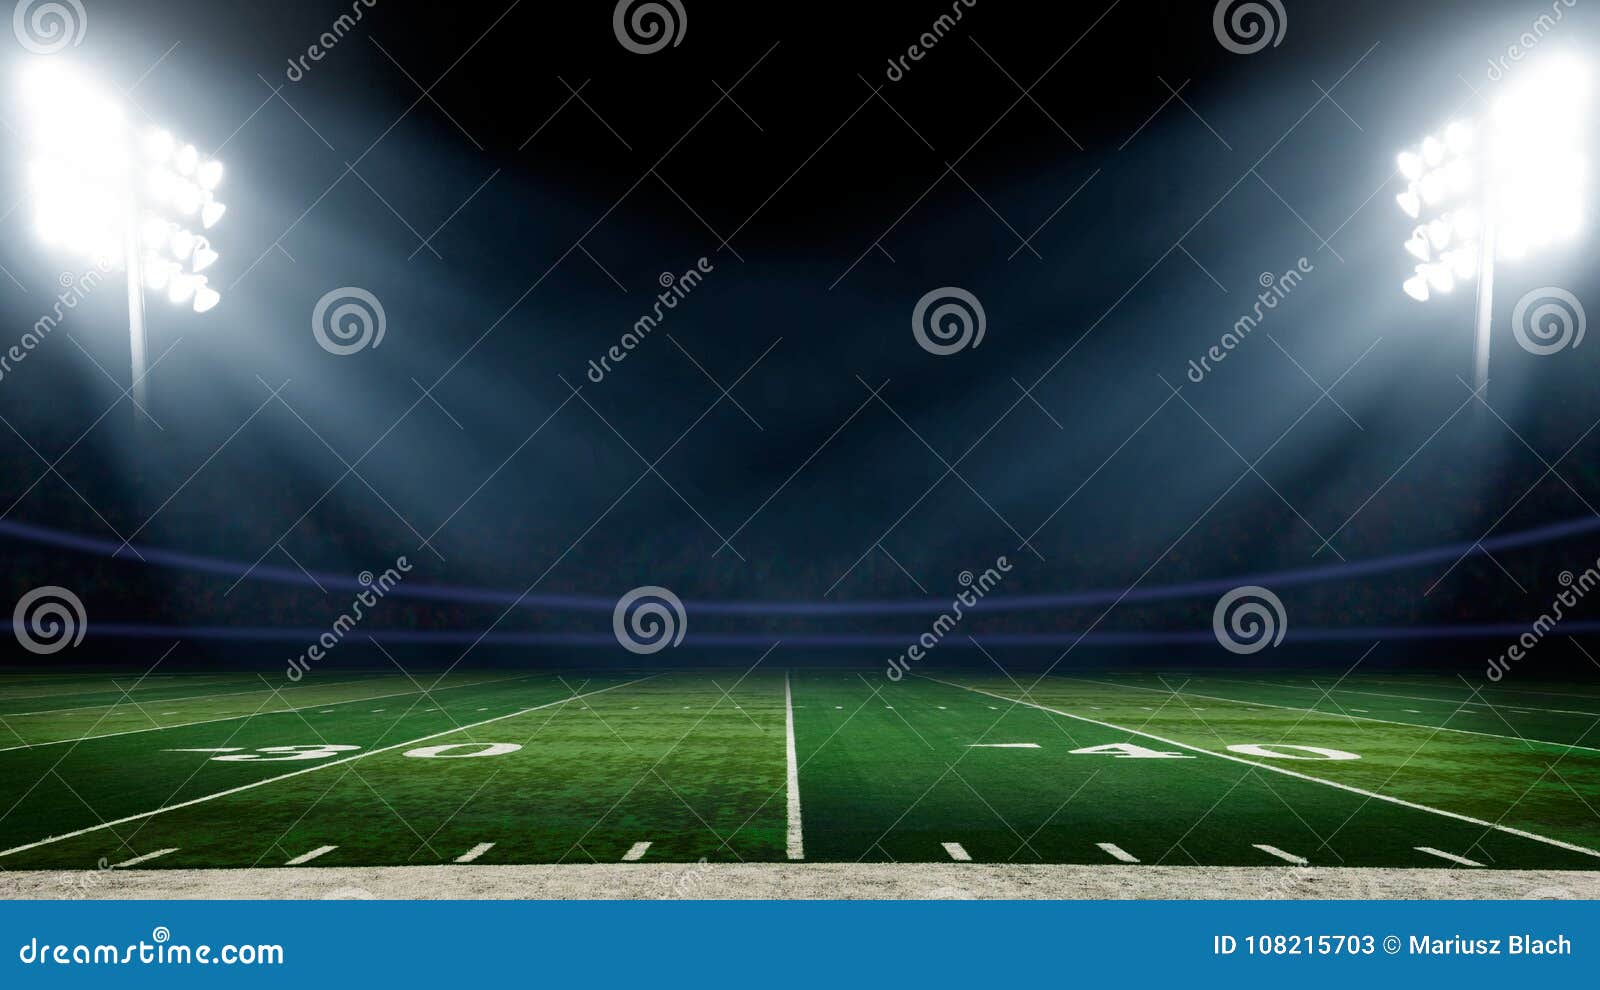 football field with stadium lights